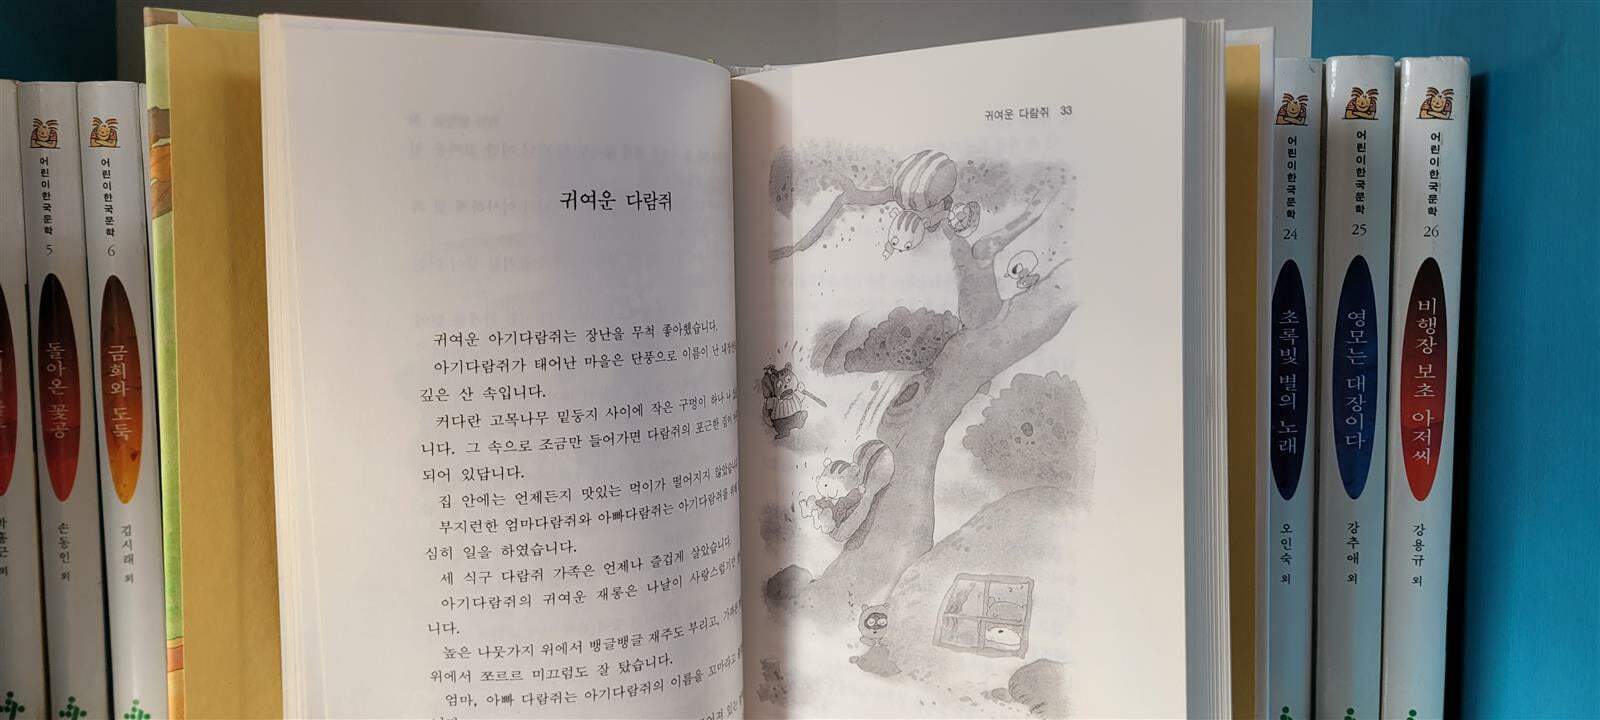 계몽사 어린이 한국문학 53권세트(본책1권 없음/상세사진참조)